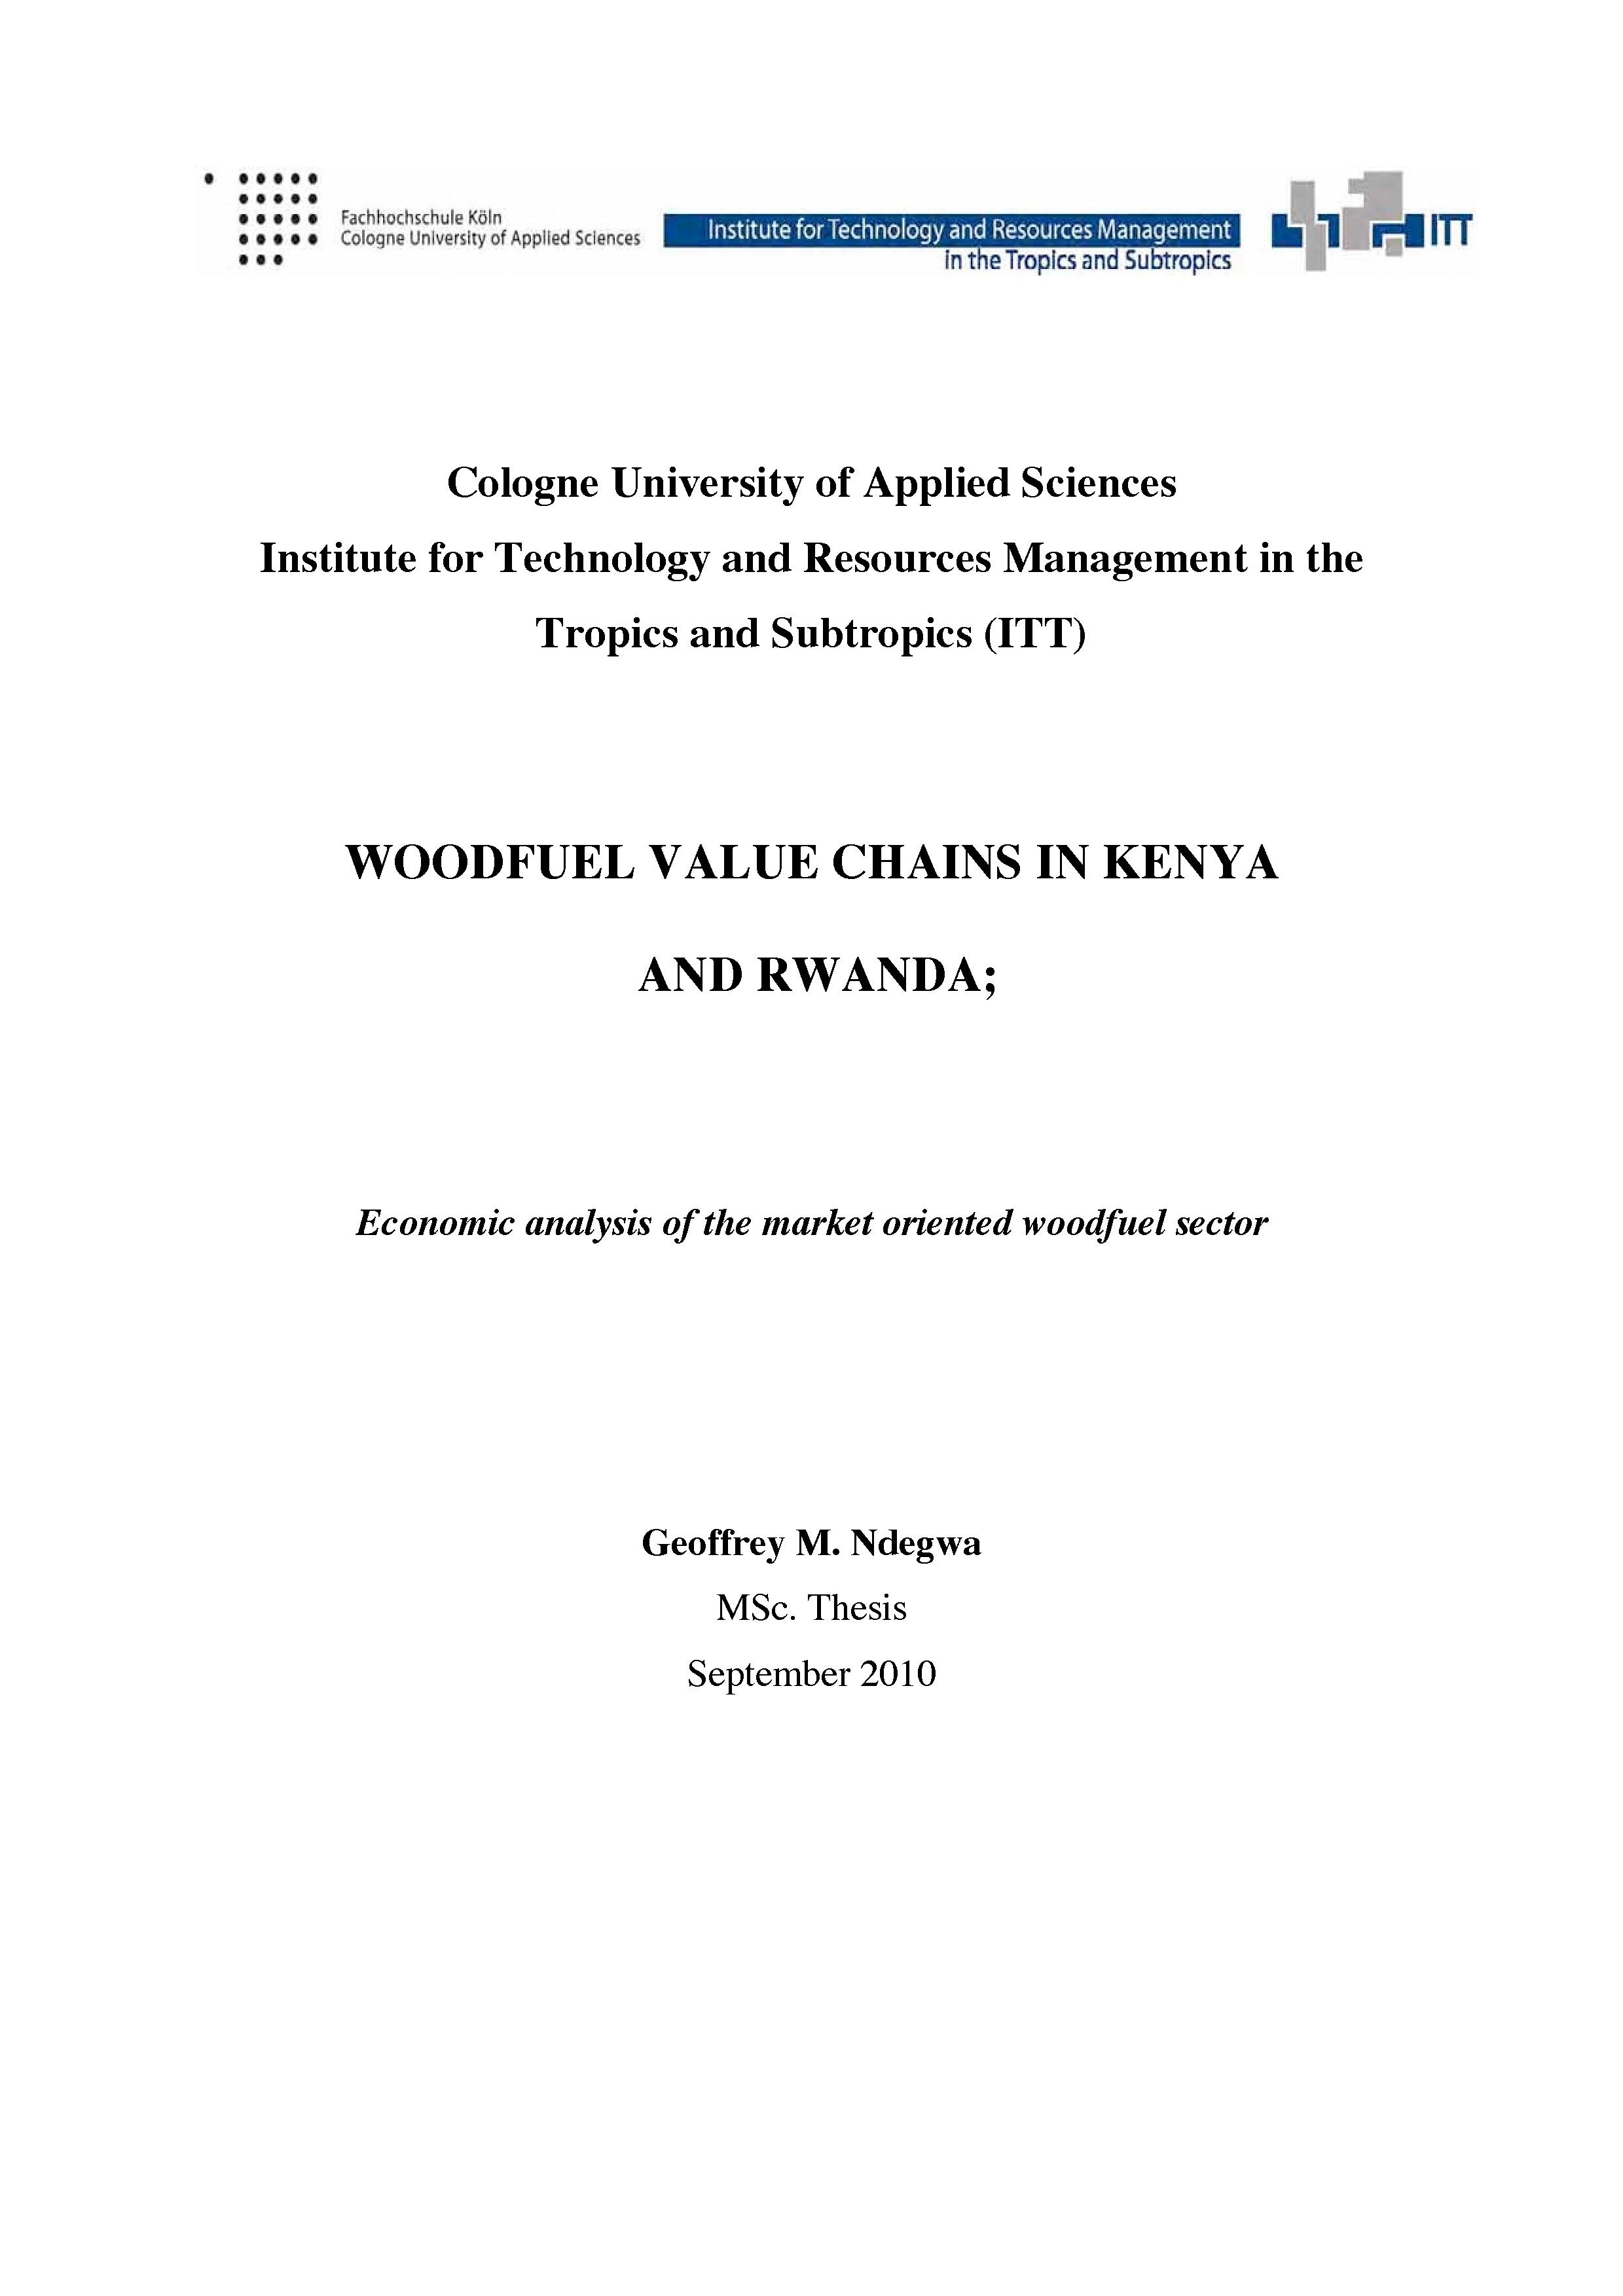 Ndegwa2010 Woodfuel Value Chains in Kenya+Rwanda.pdf